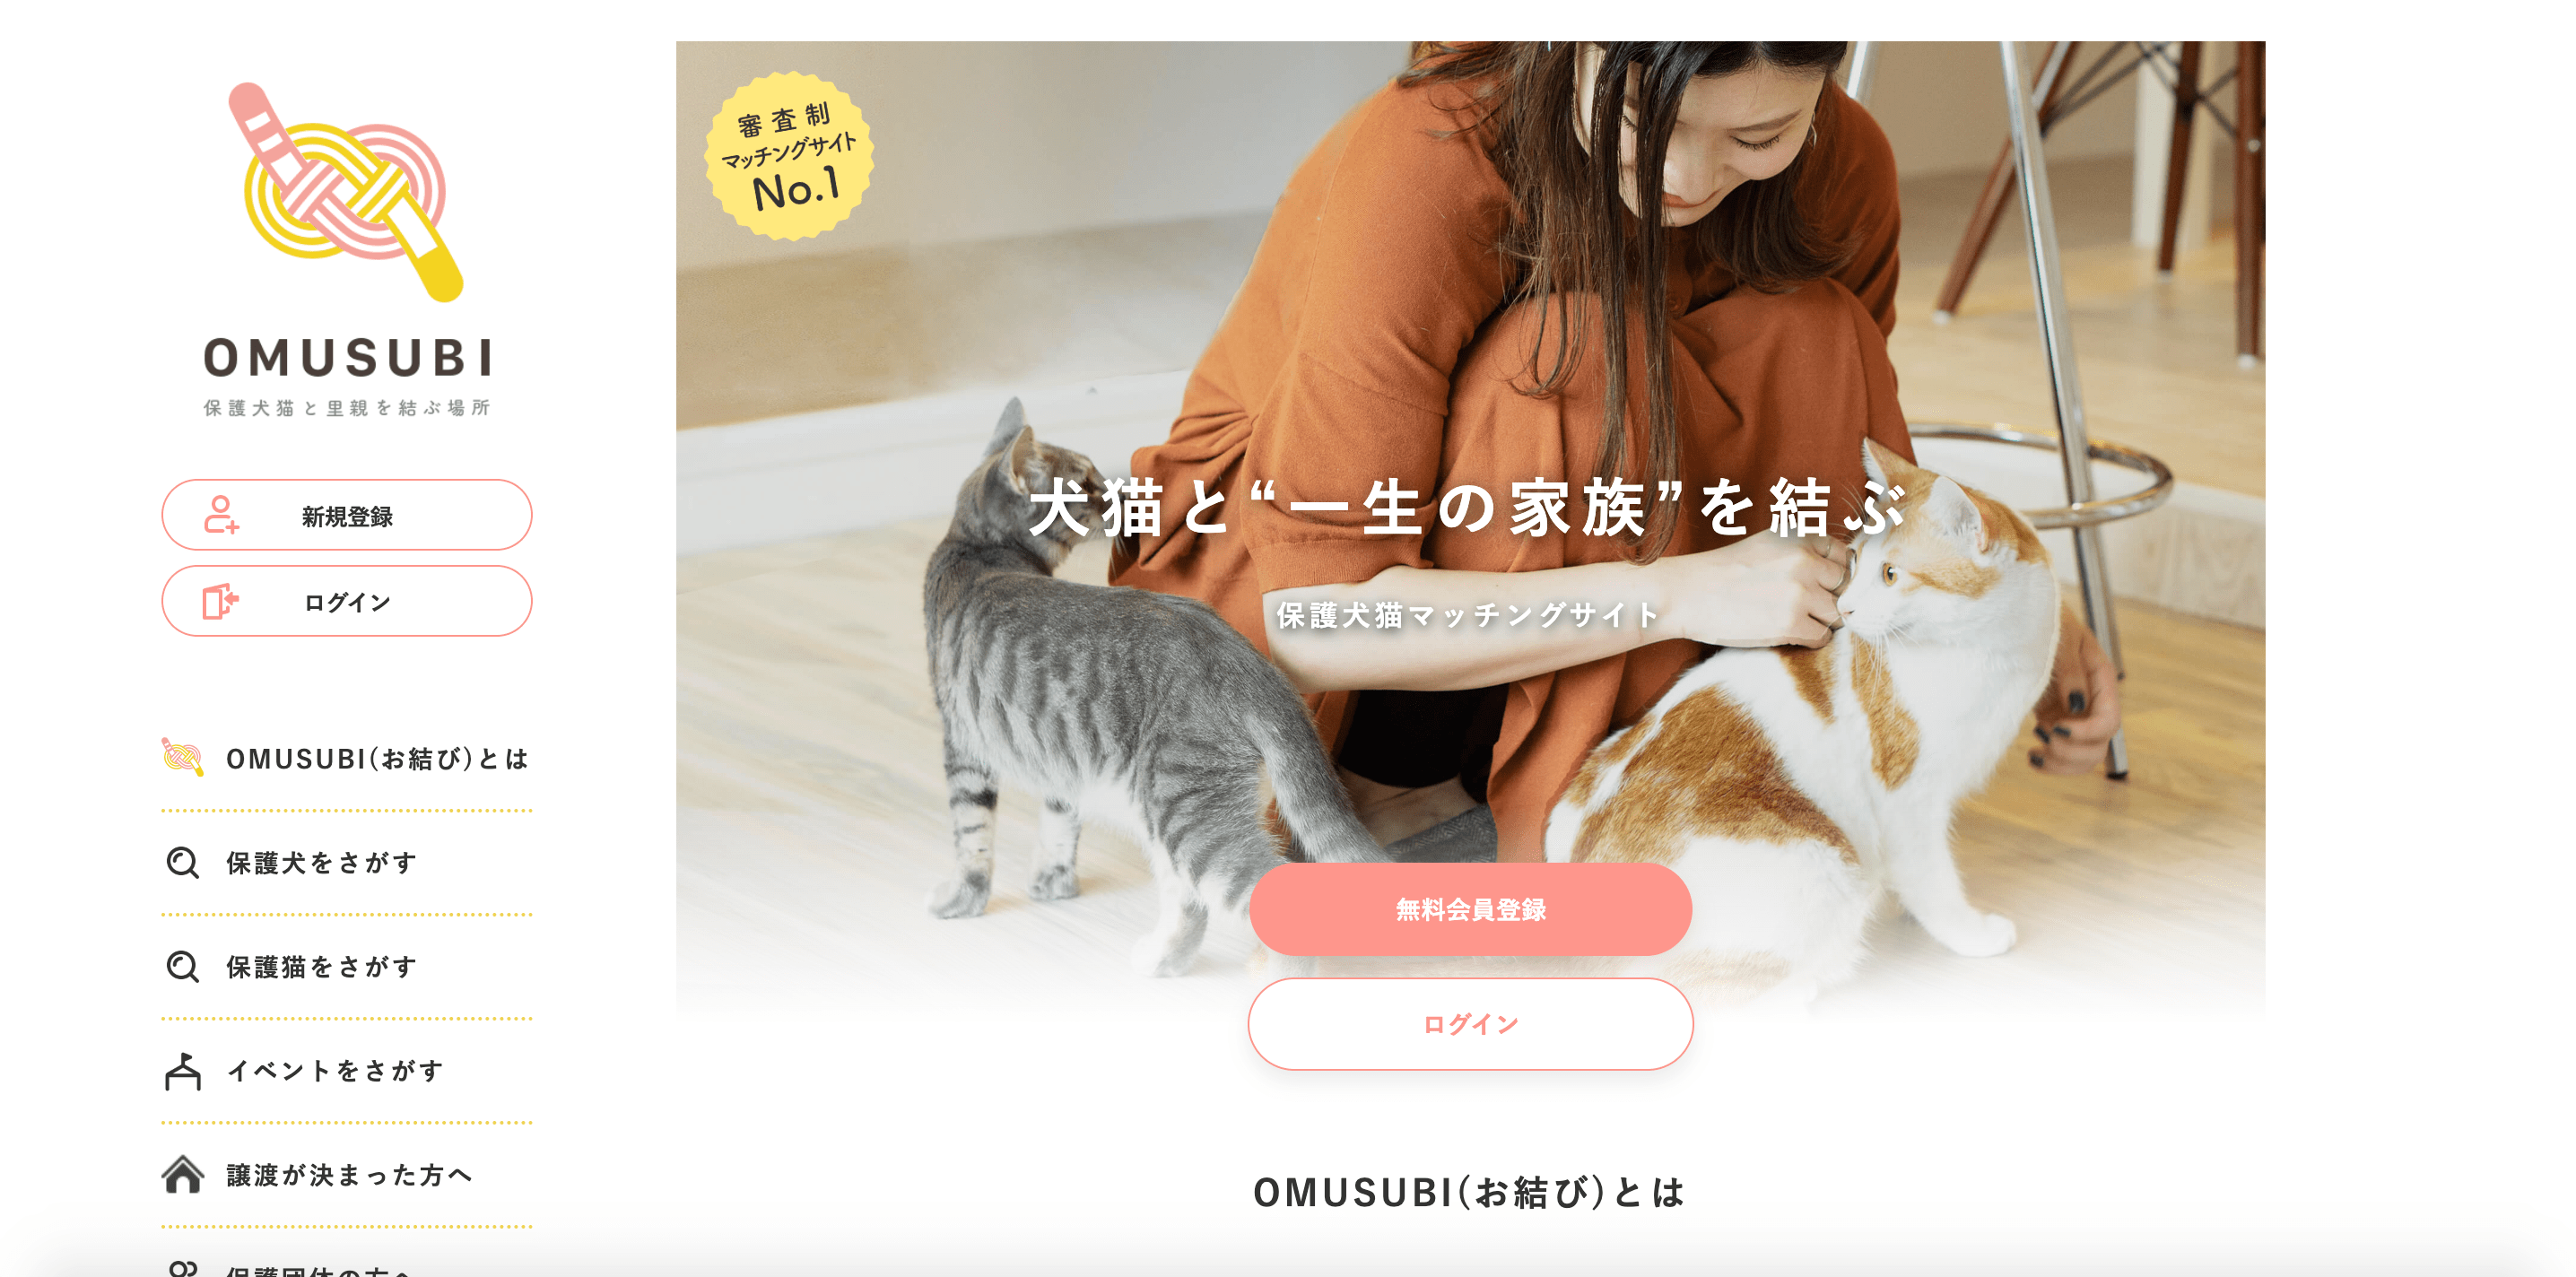 保護犬猫と飼い手のマッチングサービス「OMUSUBI」の公式サイトのスクリーンショット